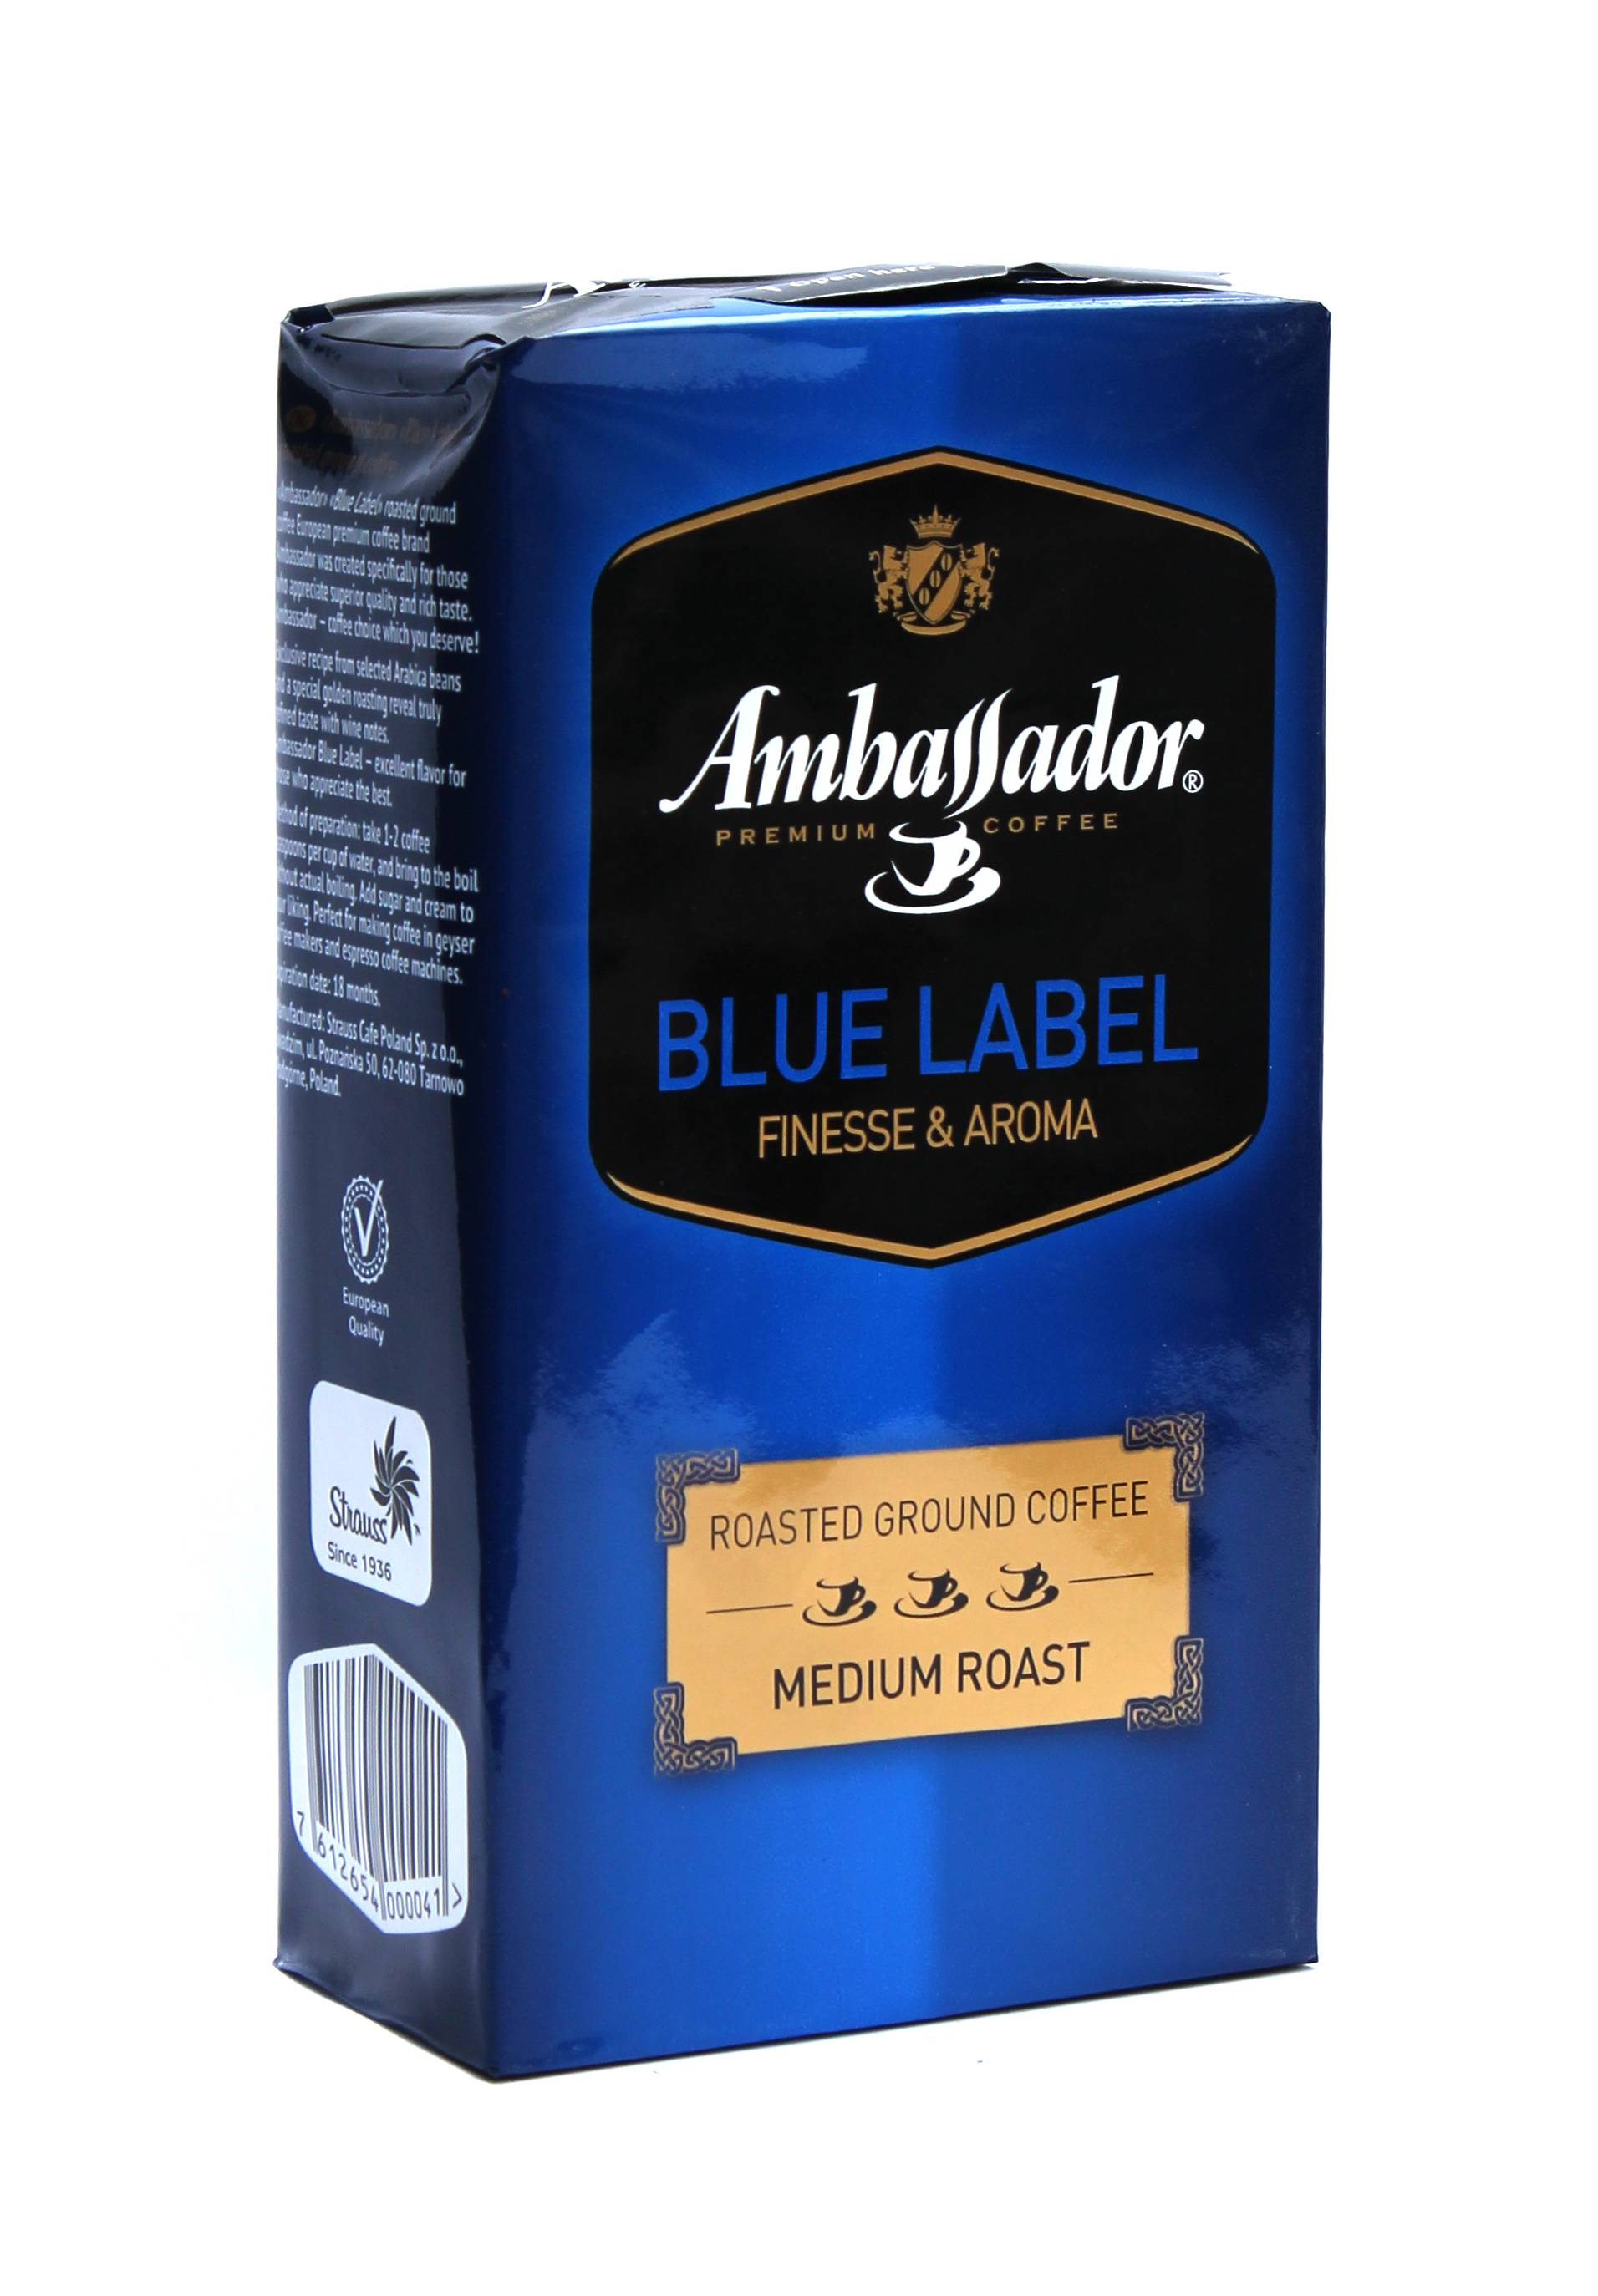 Кофе амбассадор. цена на кофе ambassador, отзывы и линейка продуктов